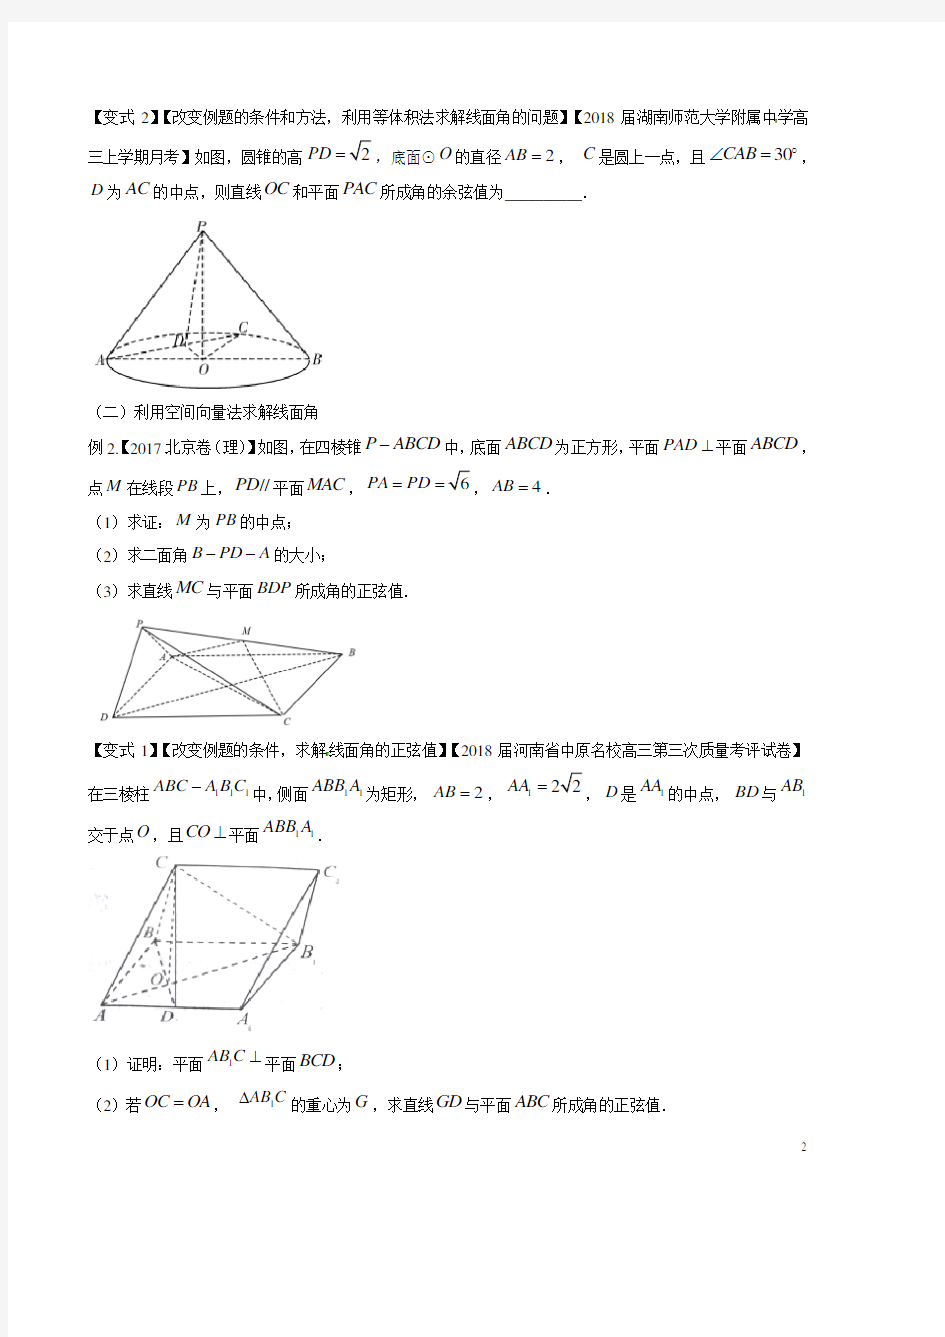 考点31 直线与平面所成的角-2018版典型高考数学试题解读与变式(原卷版)